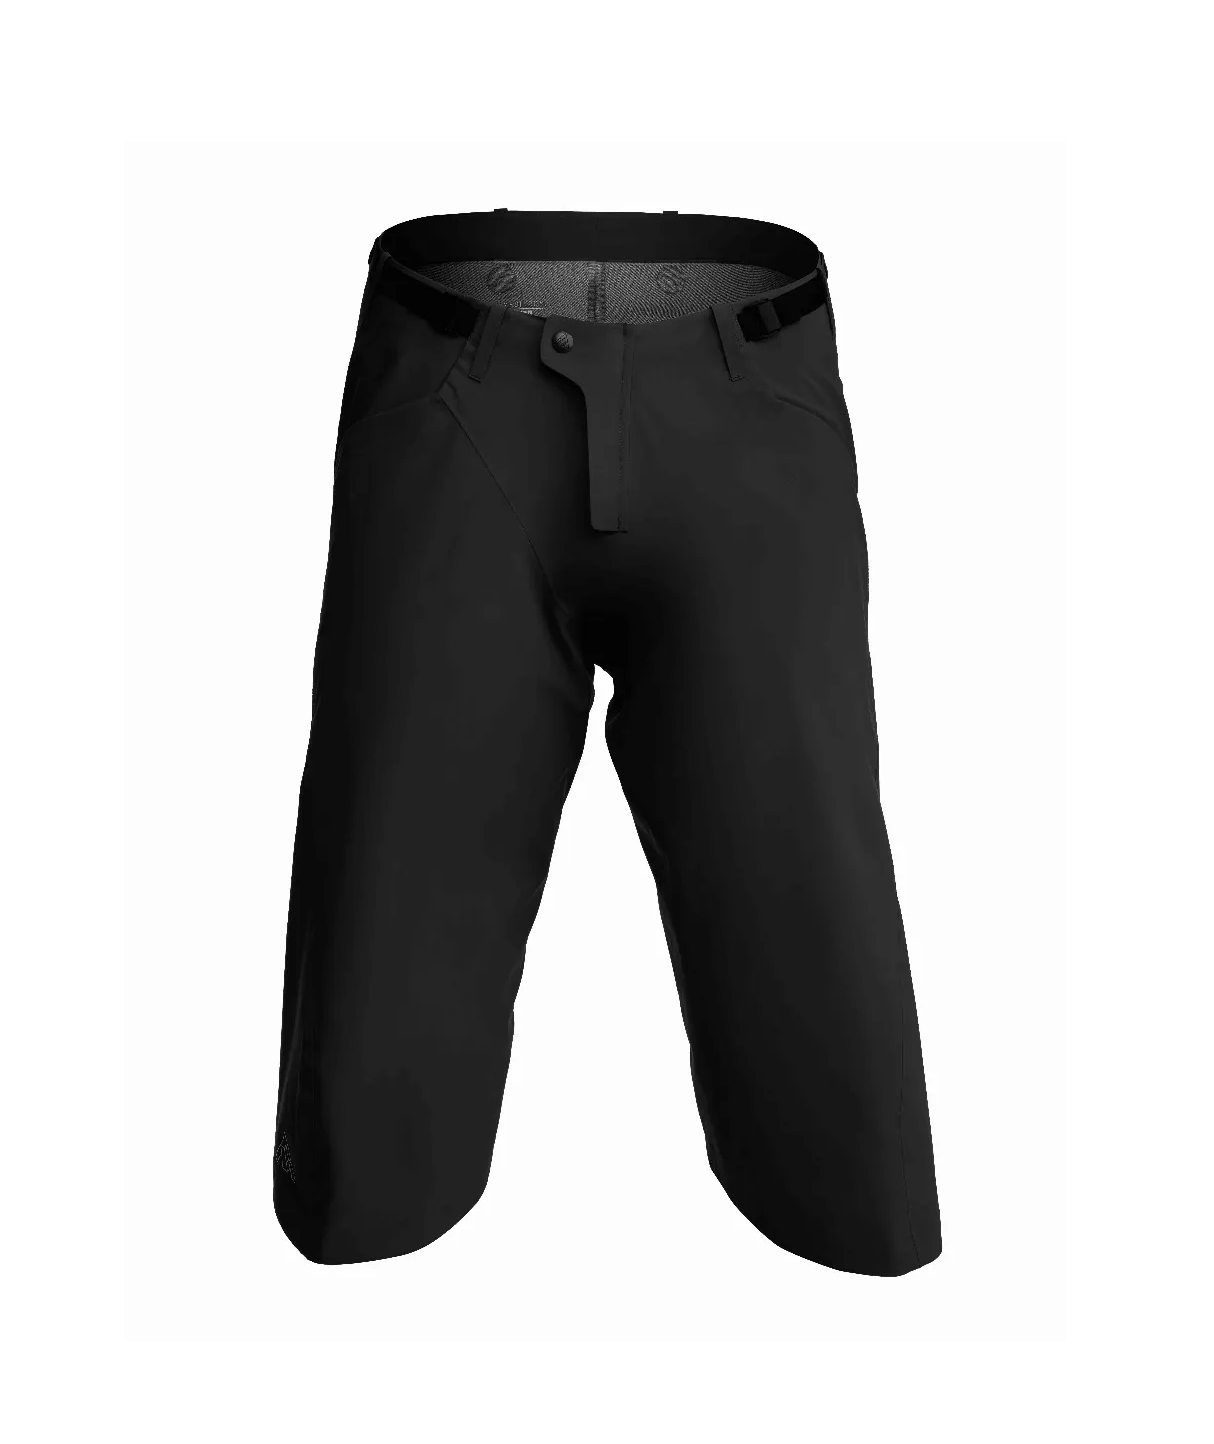 Men's Revo Shorts Black-1